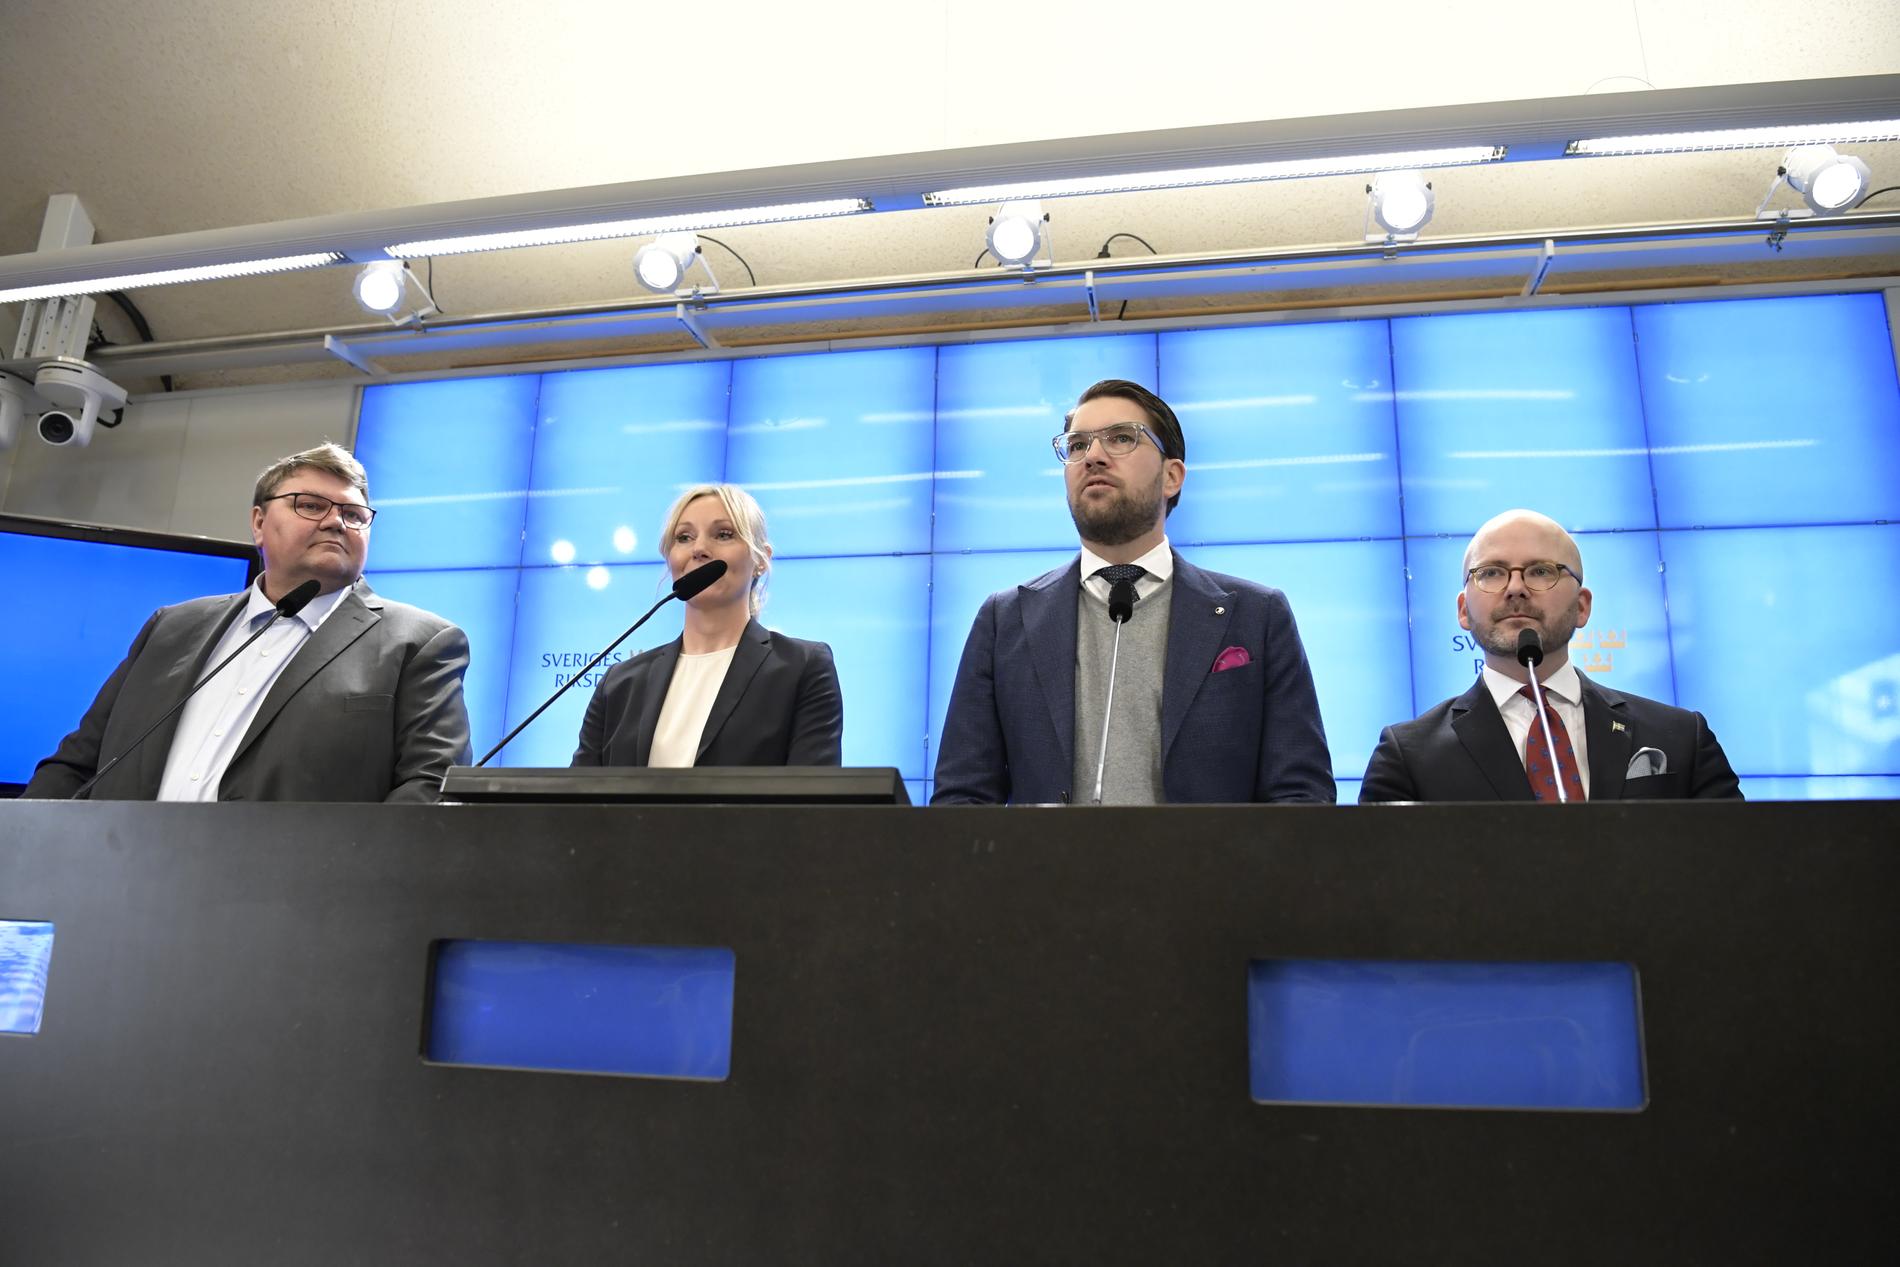 Sverigedemokraternas (från vänster) Peter Lundgren, Jessica Stegrud, partiledare Jimmie Åkesson och Charlie Weimers håller pressträff i riksdagens presscenter med anledning av partiets lista inför valet till EU-parlamentet.